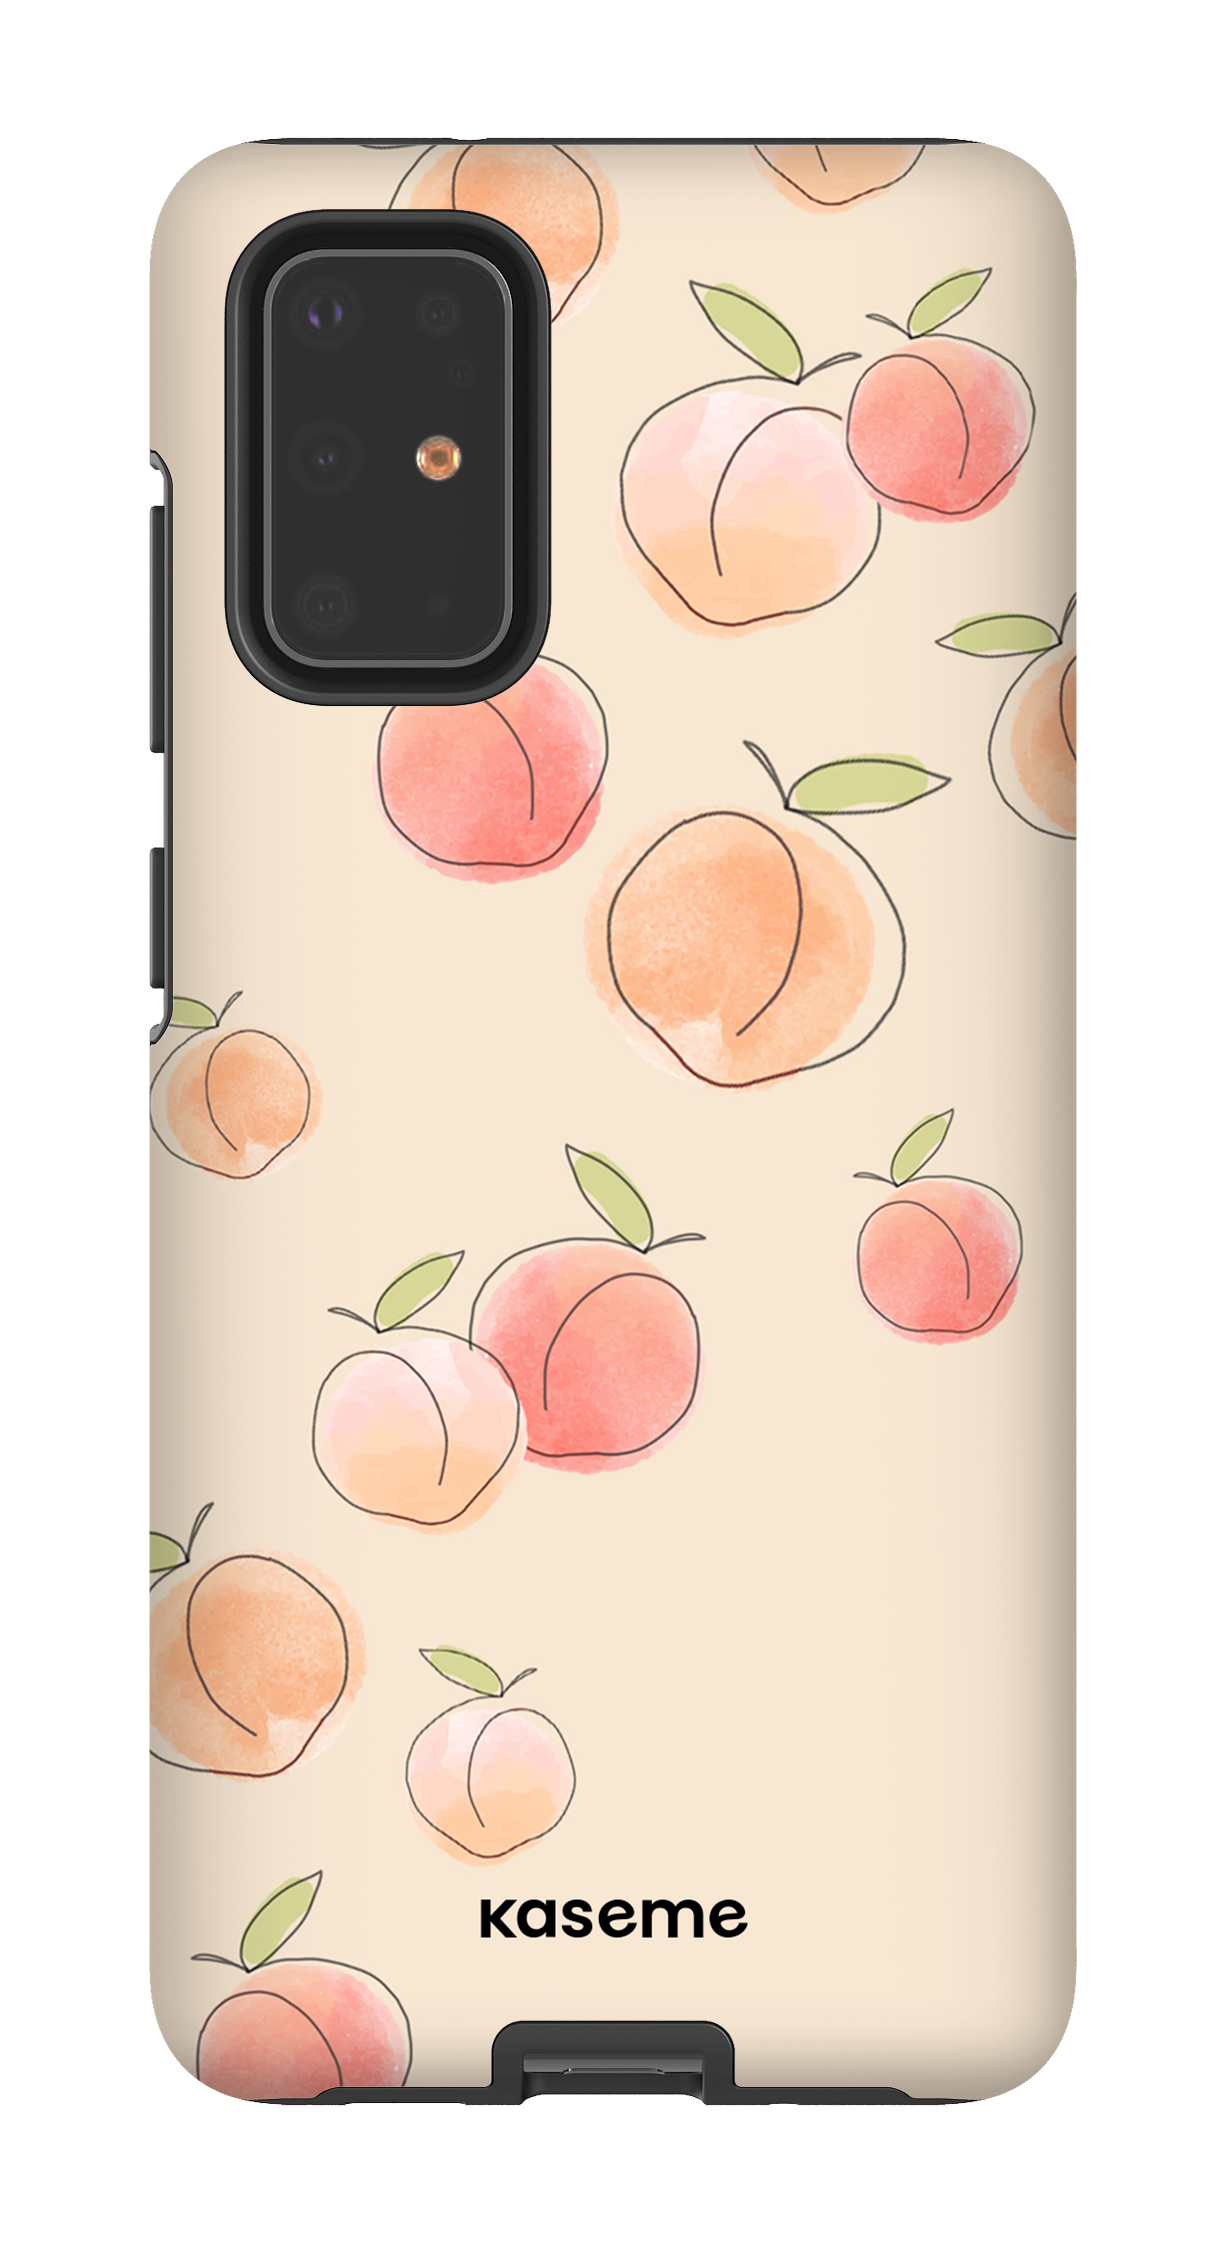 Peachy - Galaxy S20 Plus